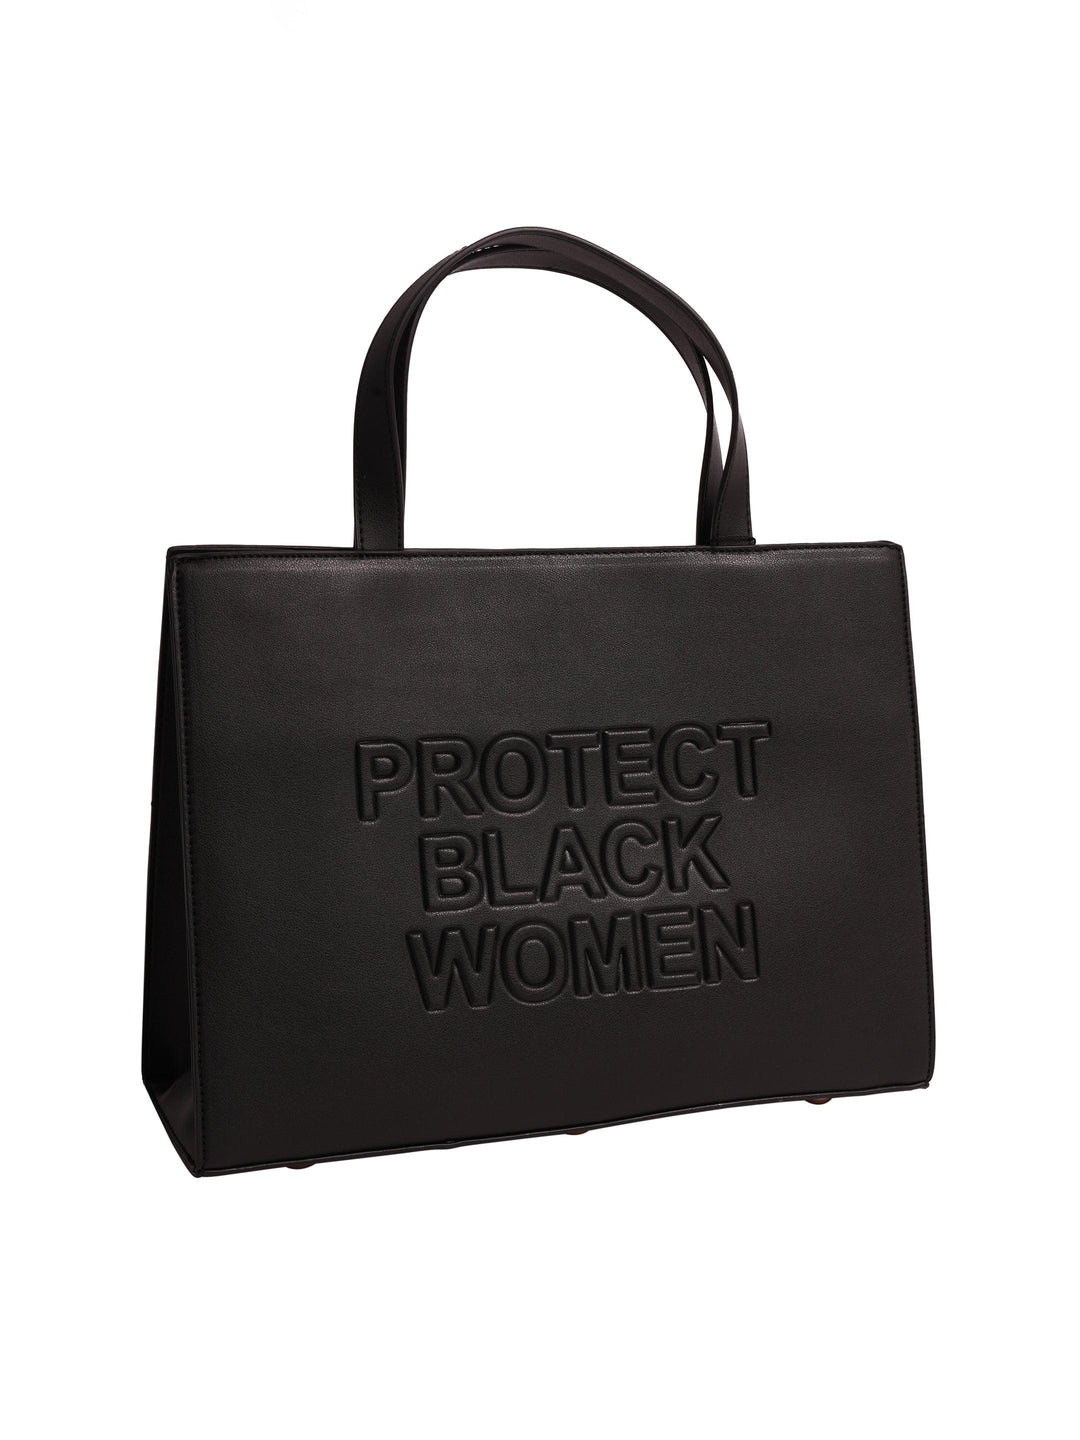 Protect Black Women Mini Bag- Vegan Black
